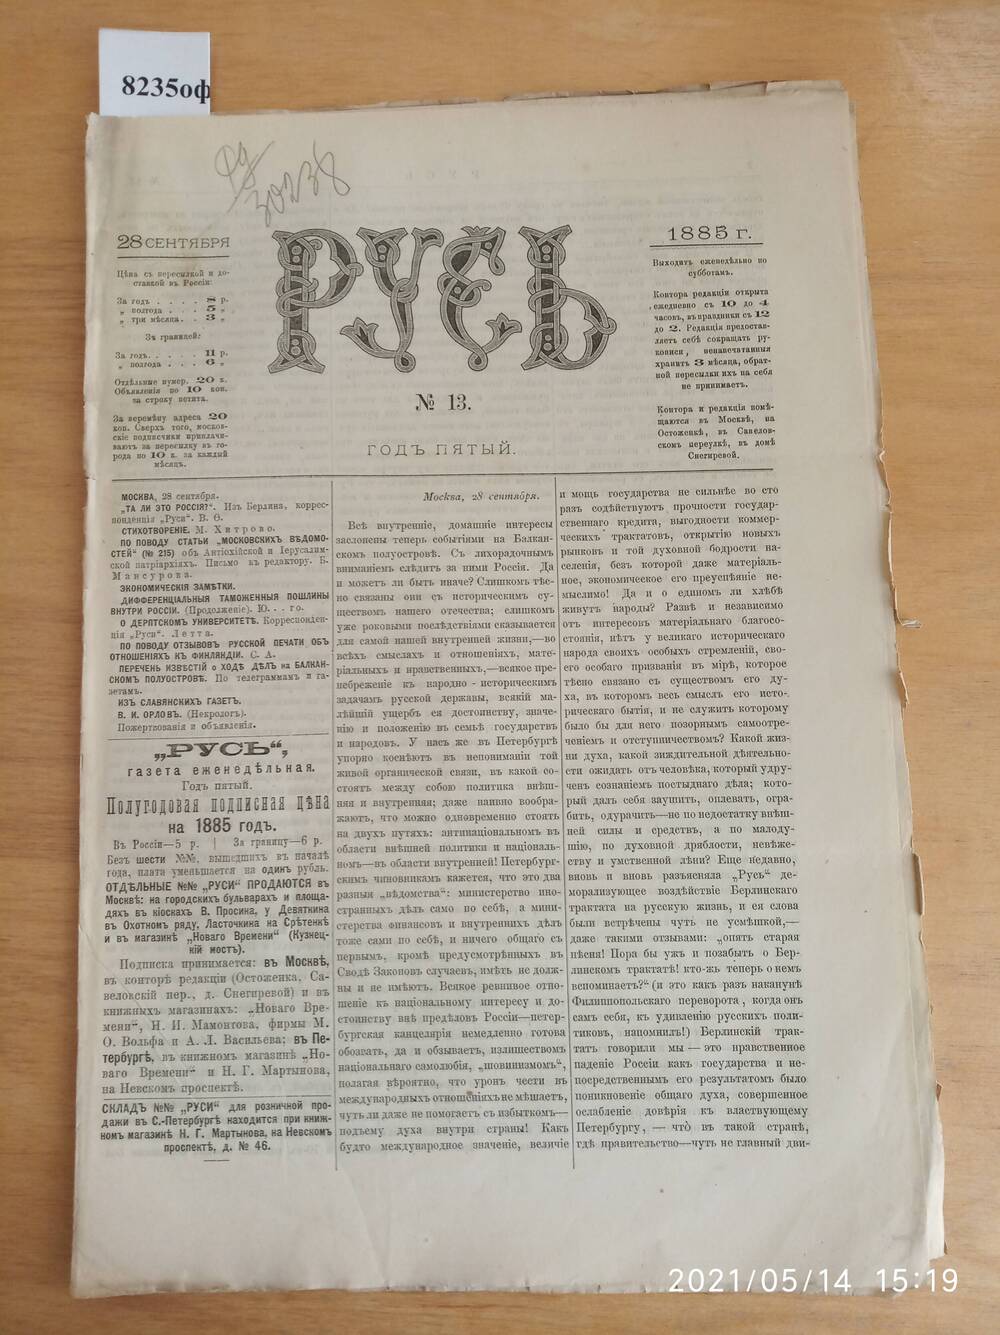 Газета. Русь, 1885, № 13, 28 сентября.